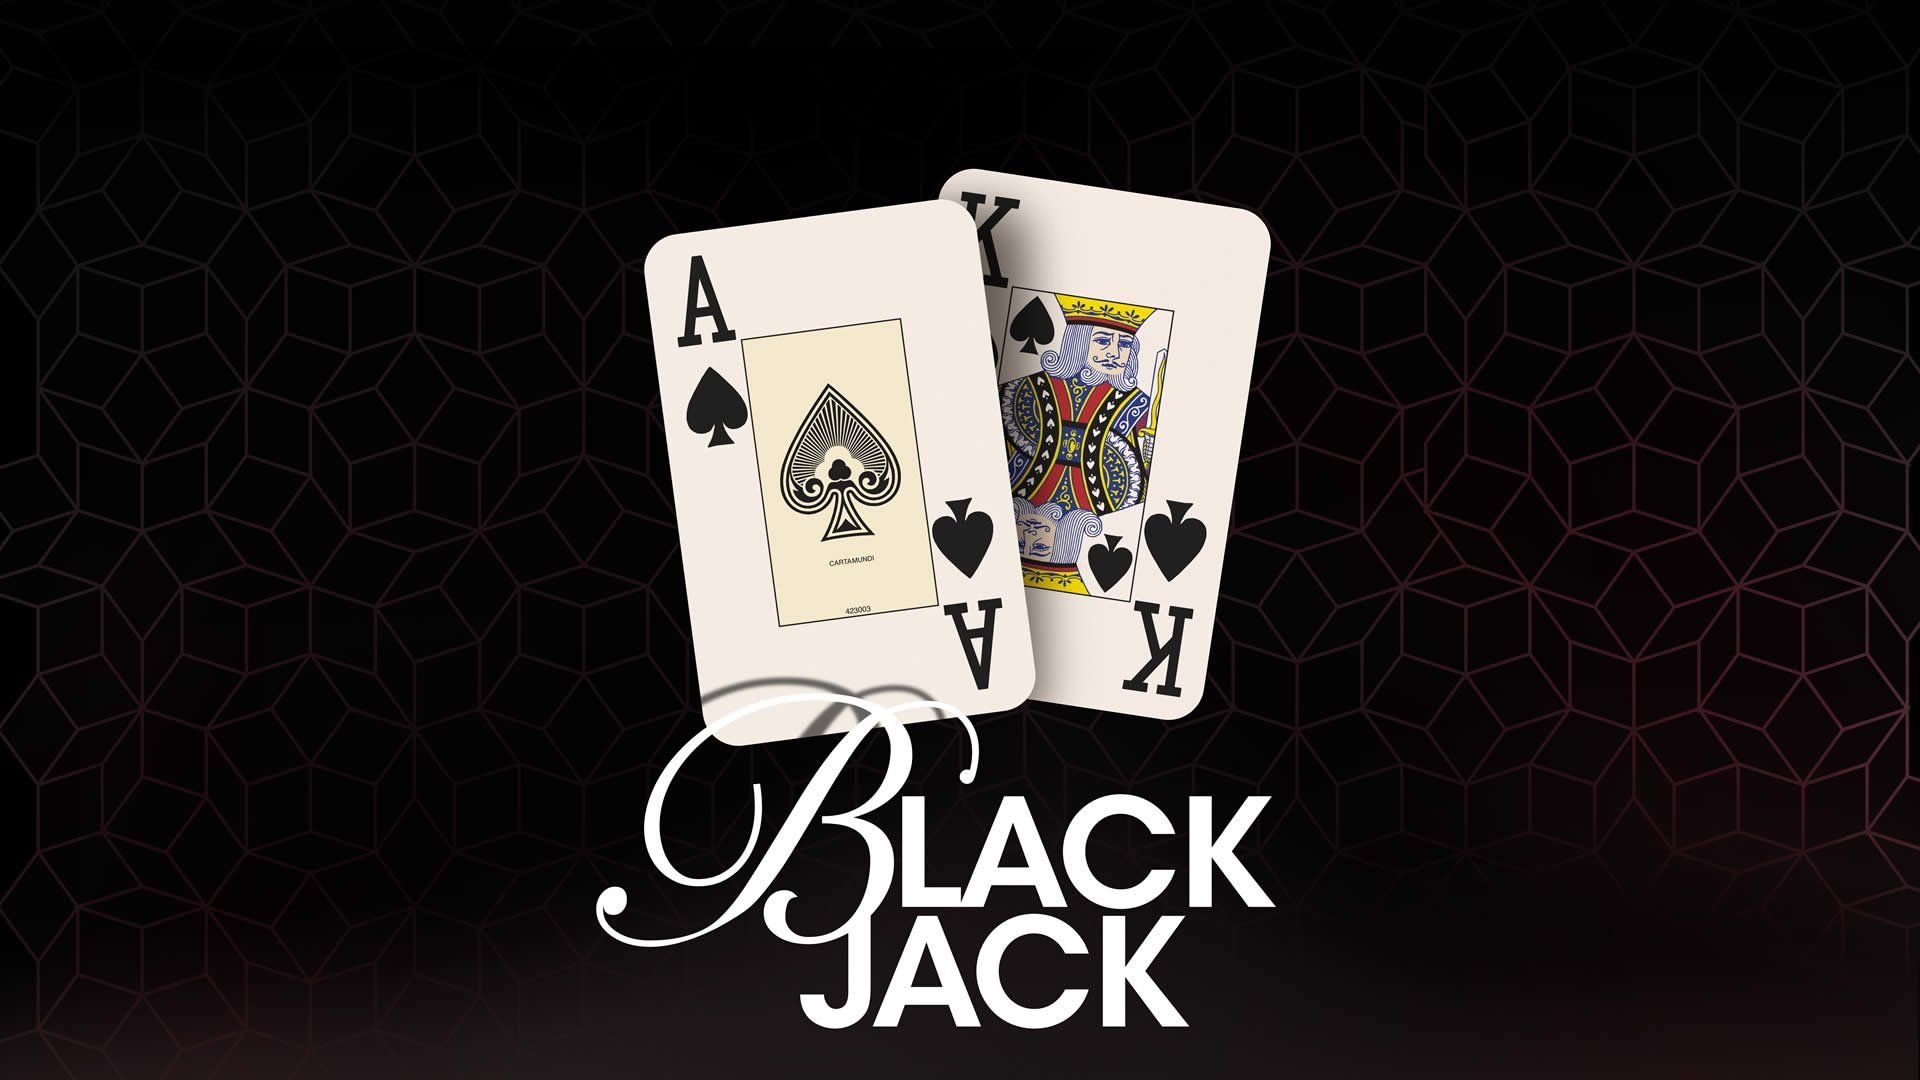 Giocare a Blackjack nei casinò online